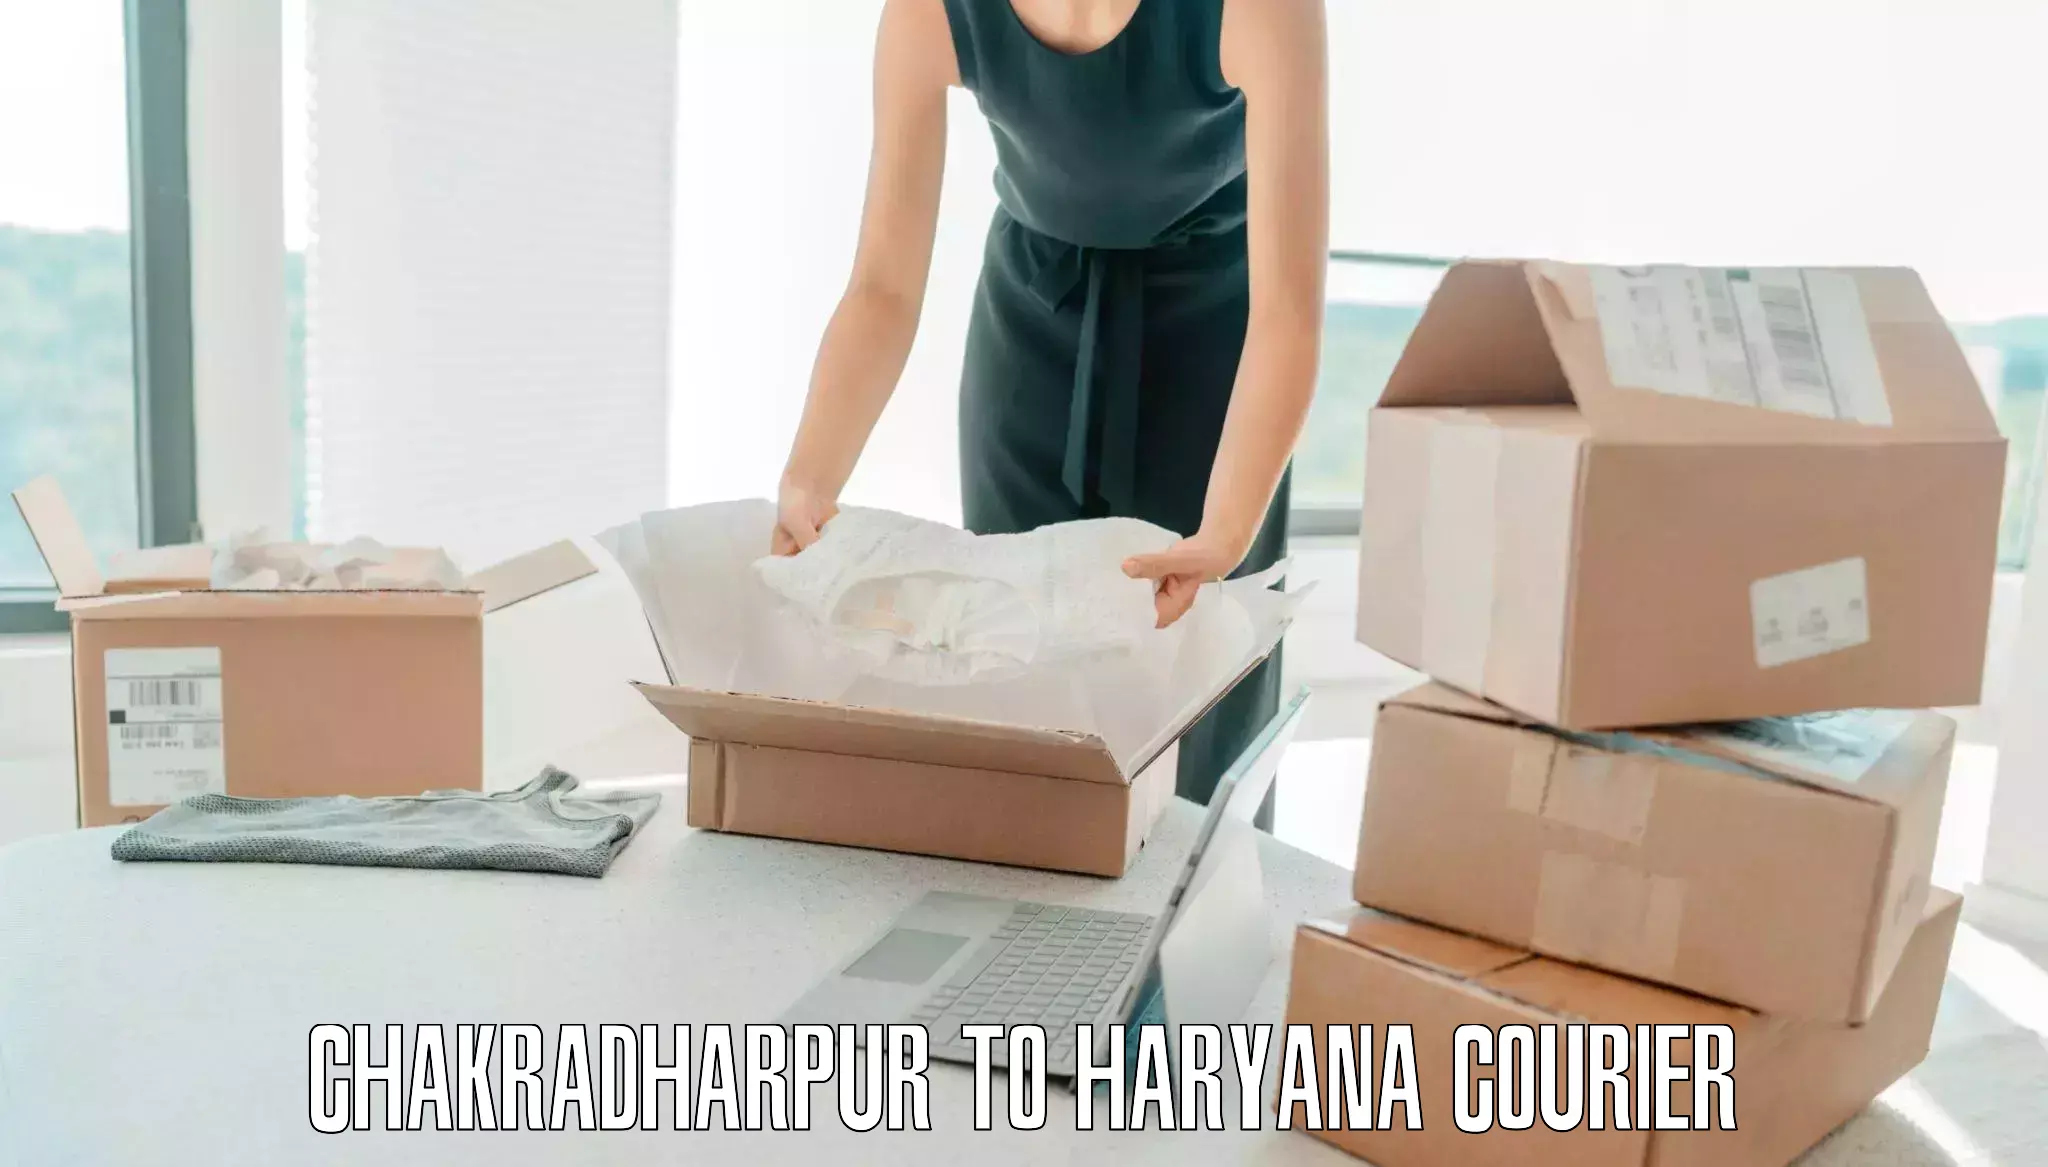 Baggage shipping service Chakradharpur to Agroha